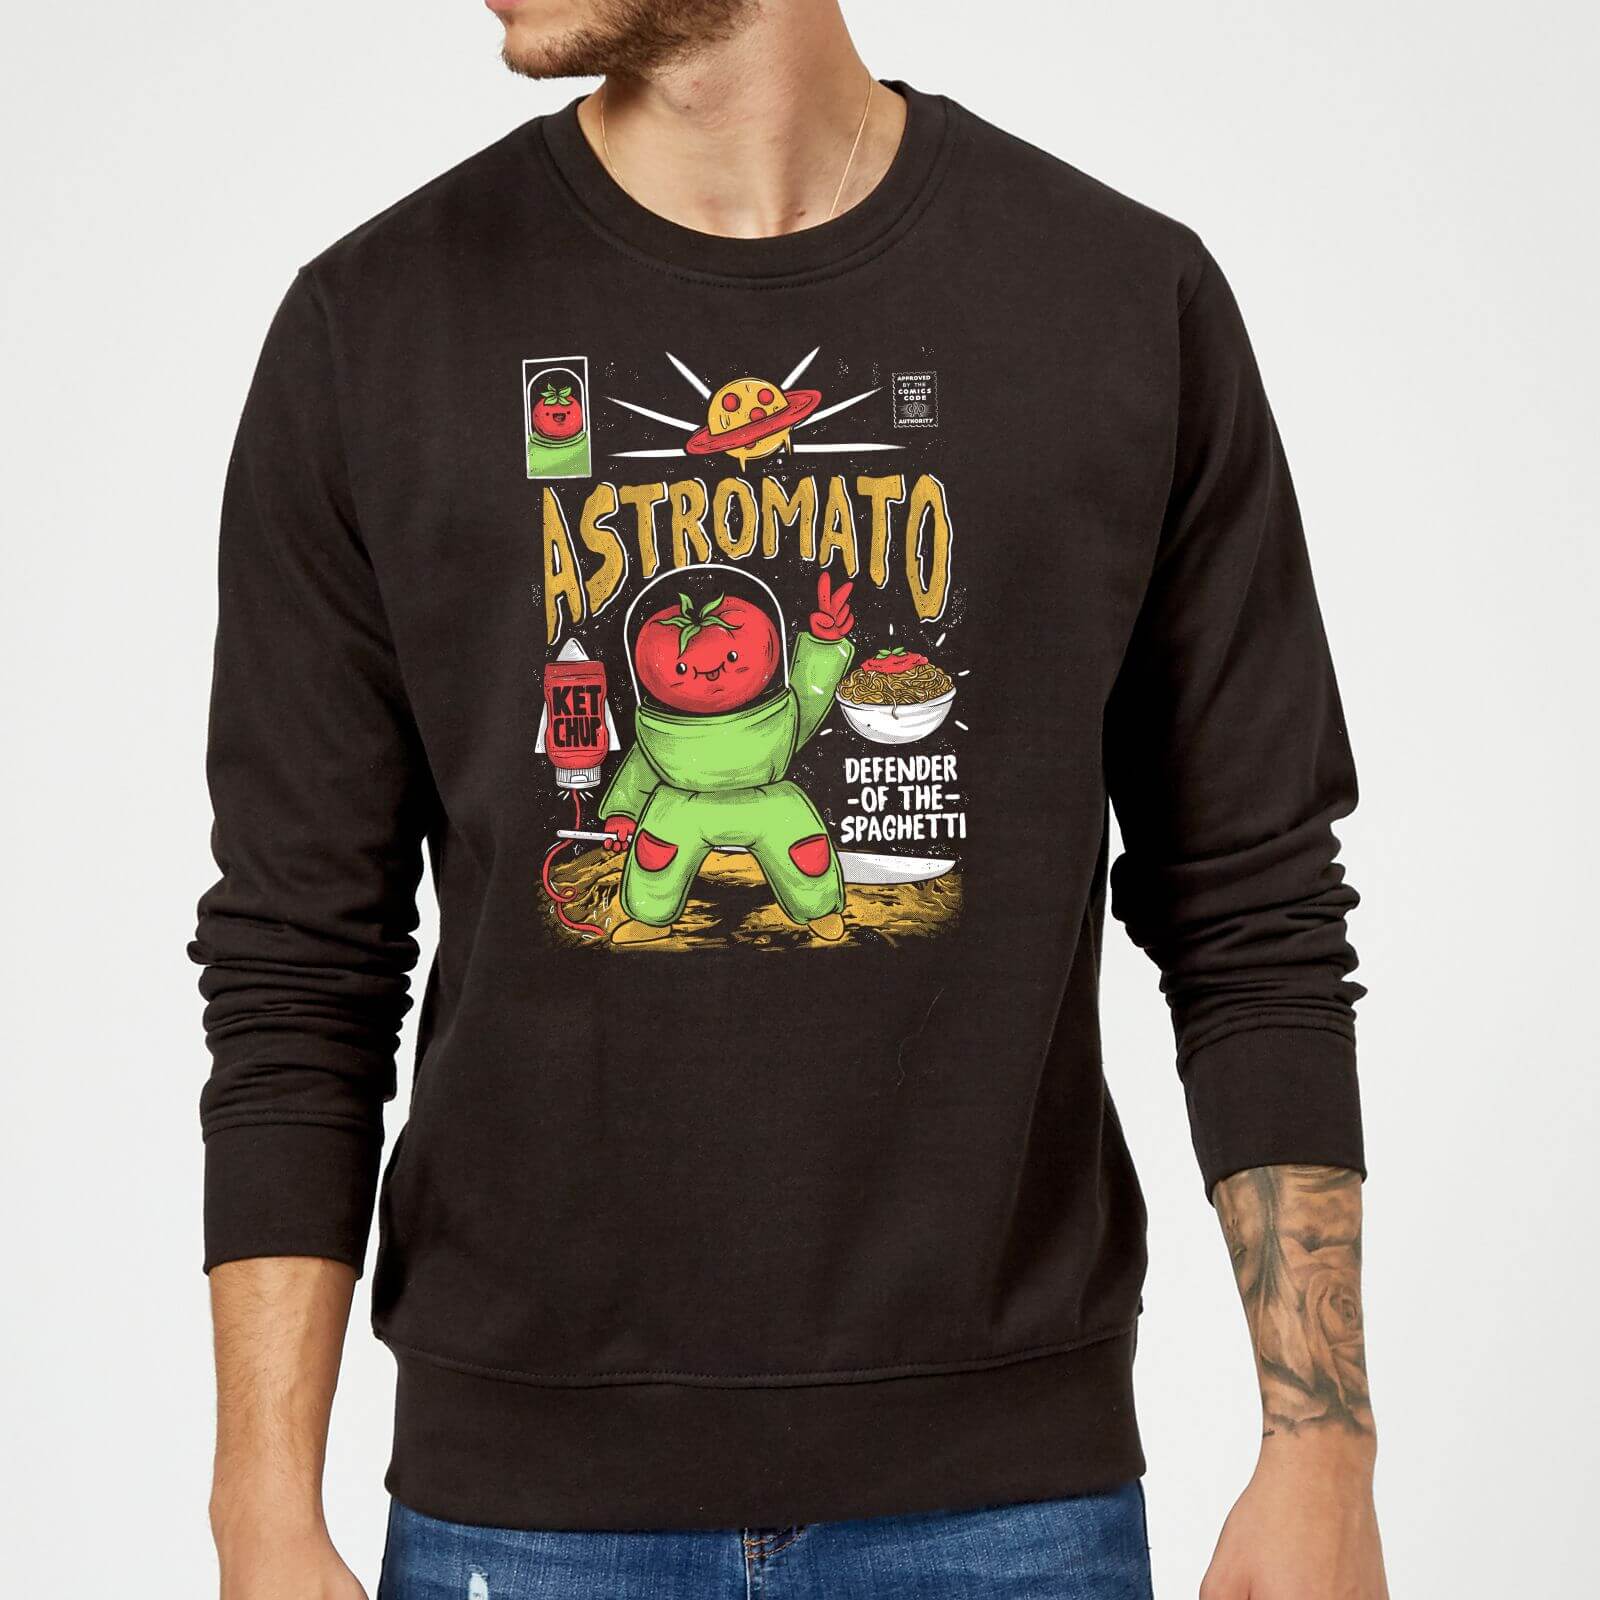 Ilustrata Astromato Sweatshirt - Black - S - Black